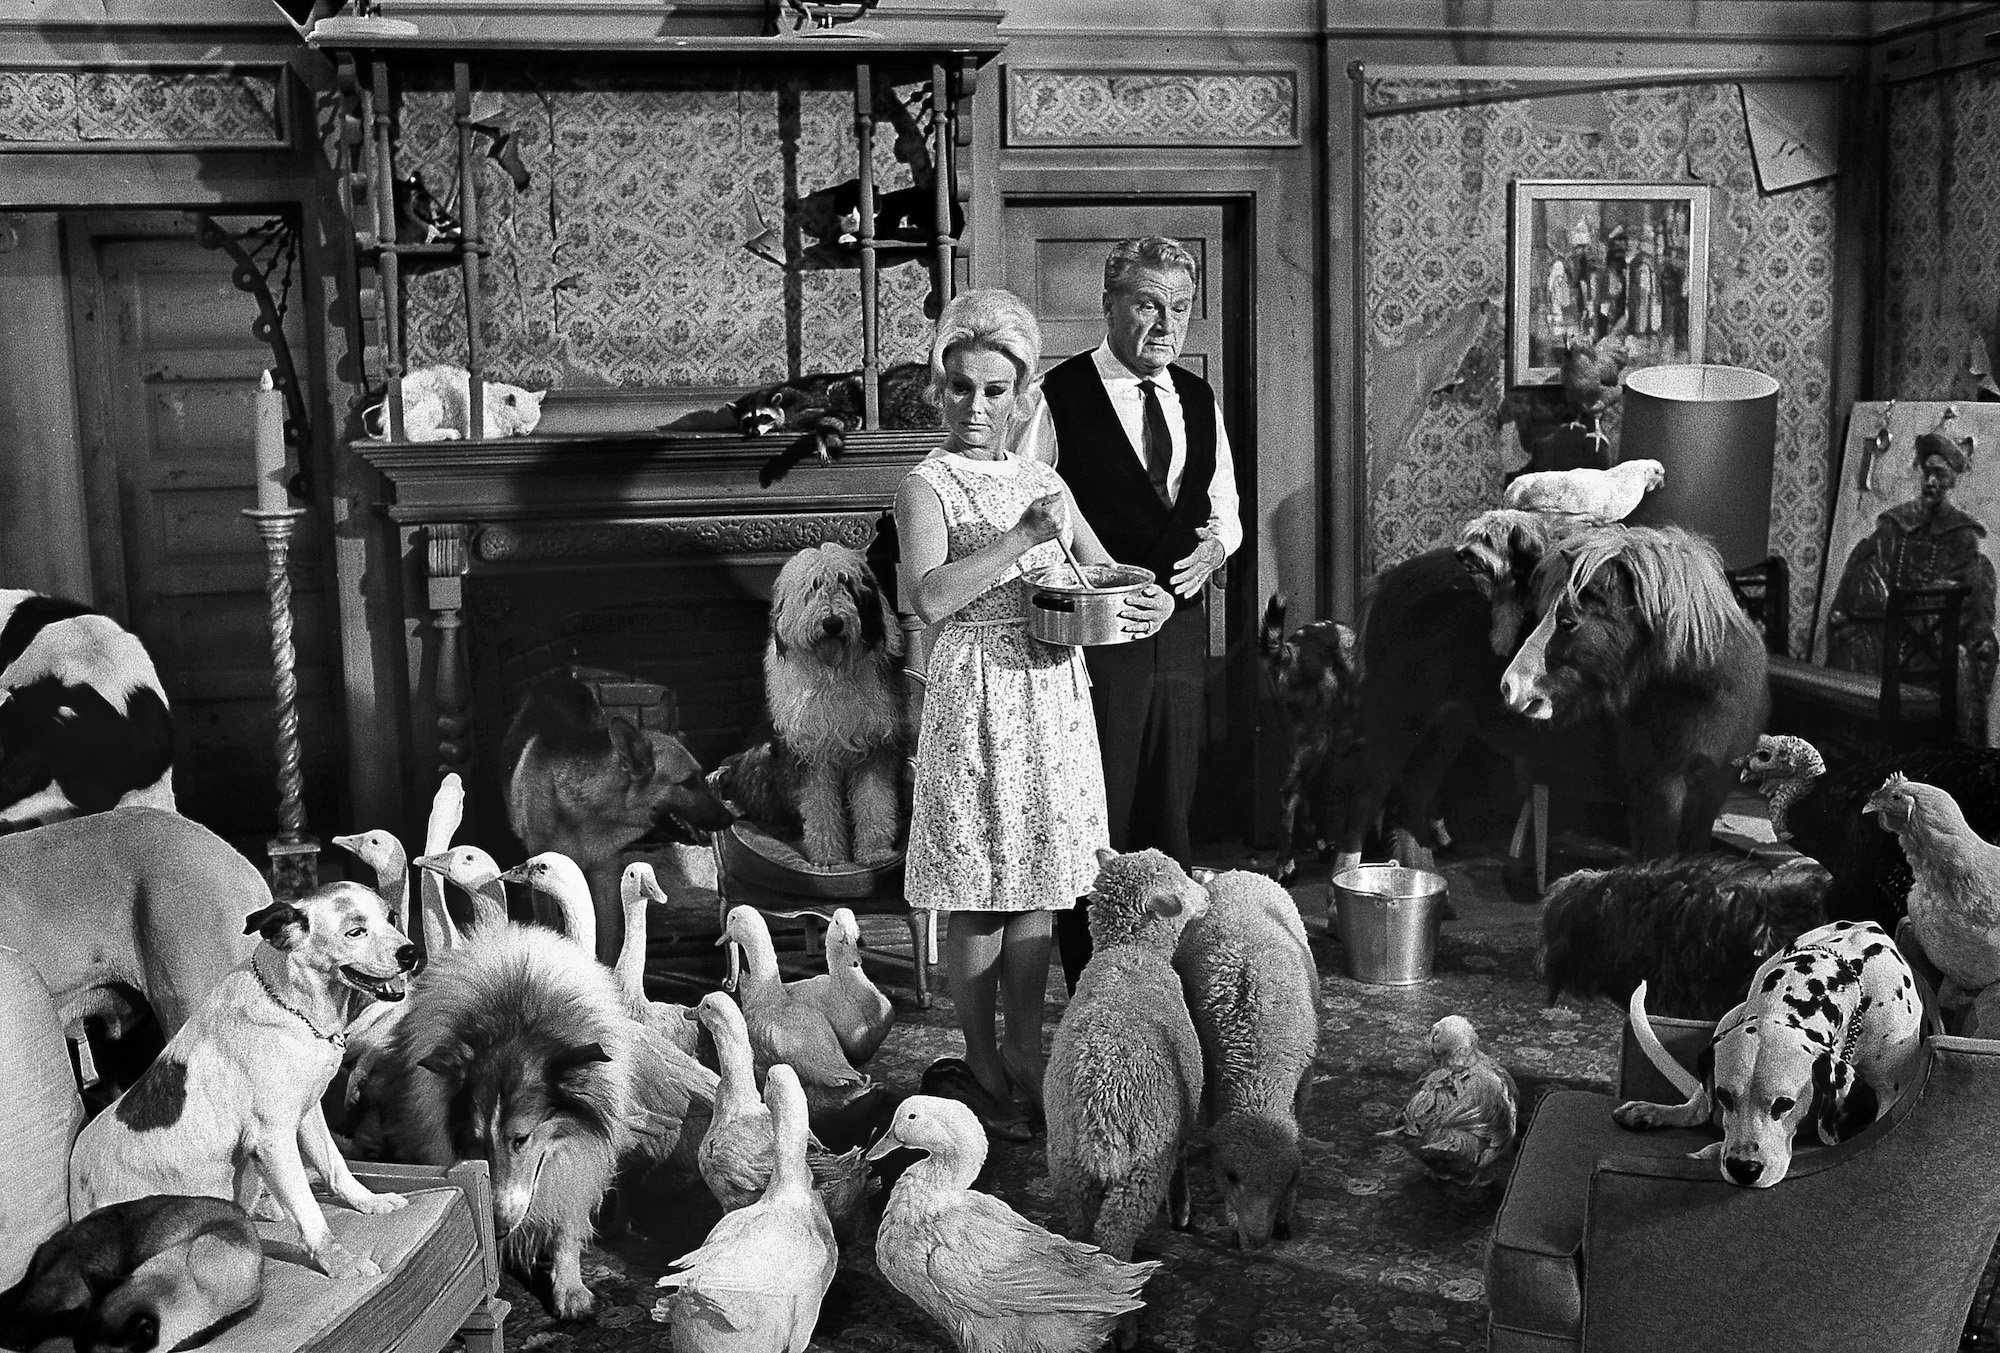 (L-R) Eva Gabor and Eddie Albert in a room full of farm animals